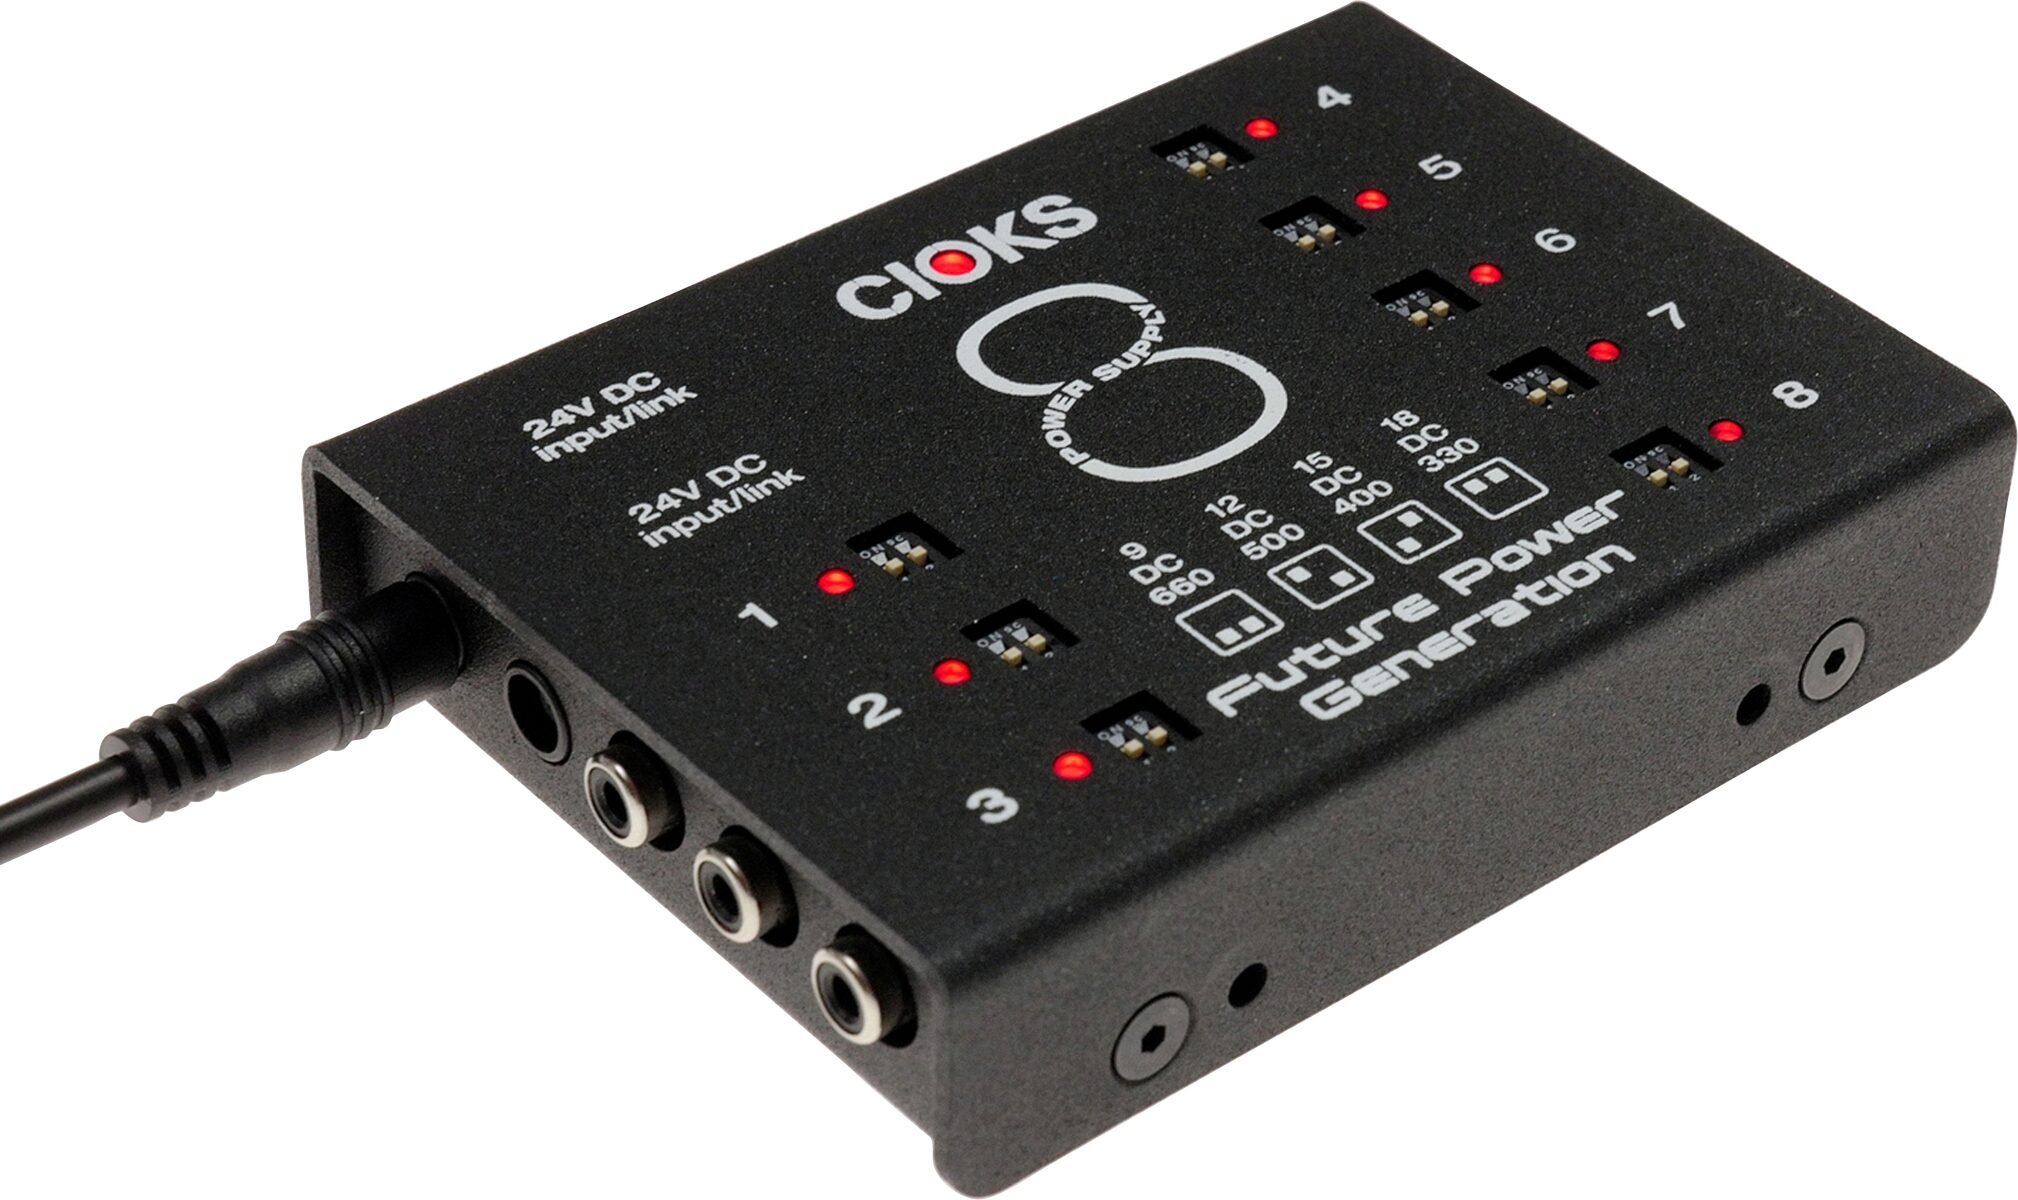 Cioks Dc8 Expander Kit - Power supply - Variation 1